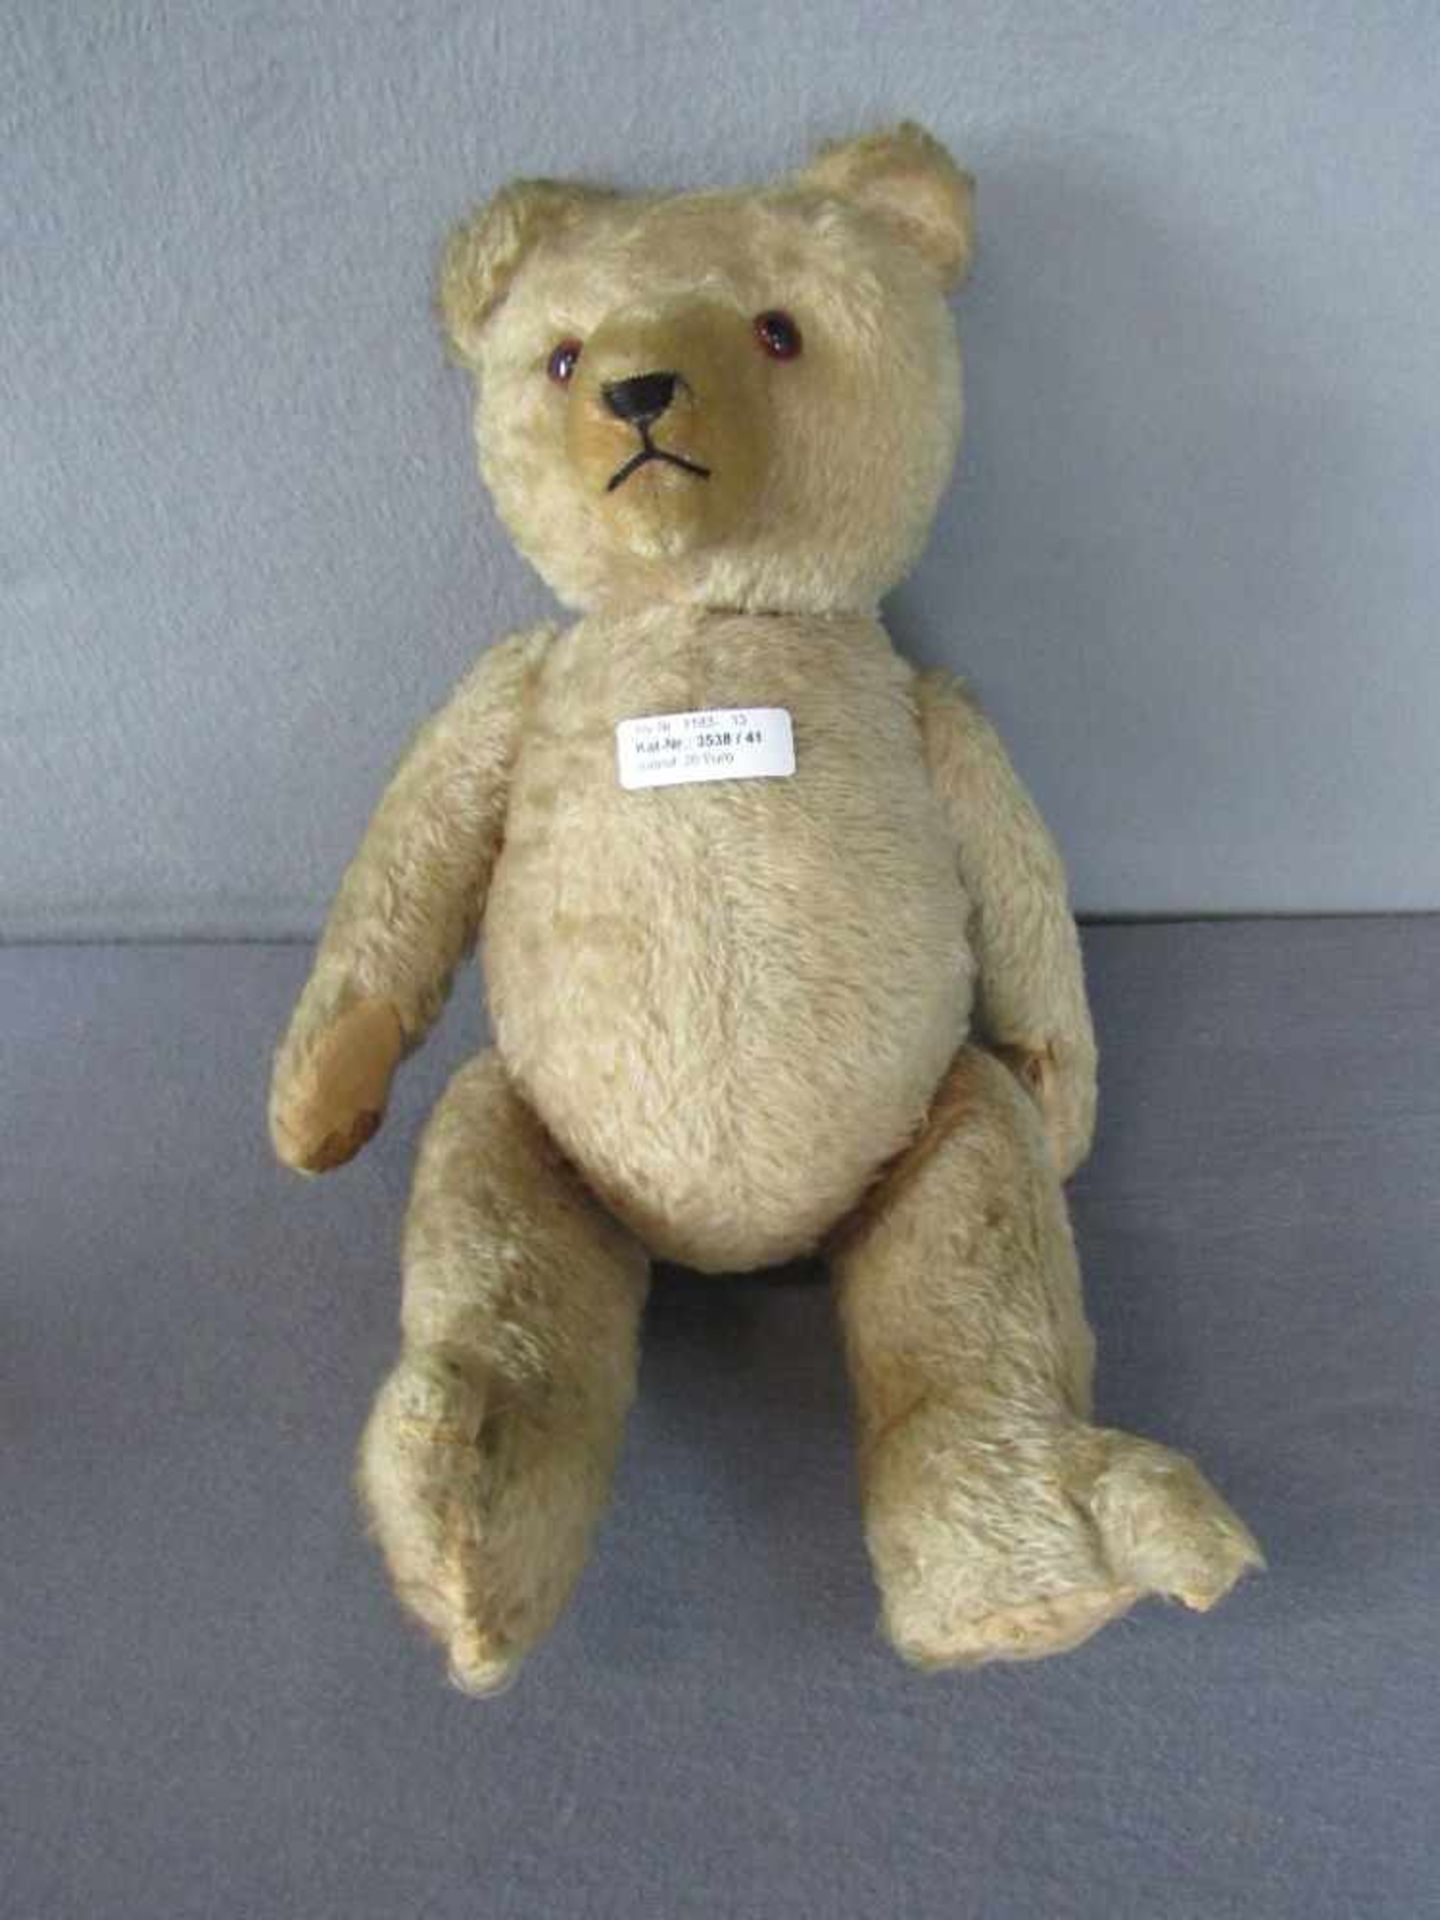 Antiker Teddybär, bespielt, 48cm hoch- - -20.00 % buyer's premium on the hammer price19.00 % VAT